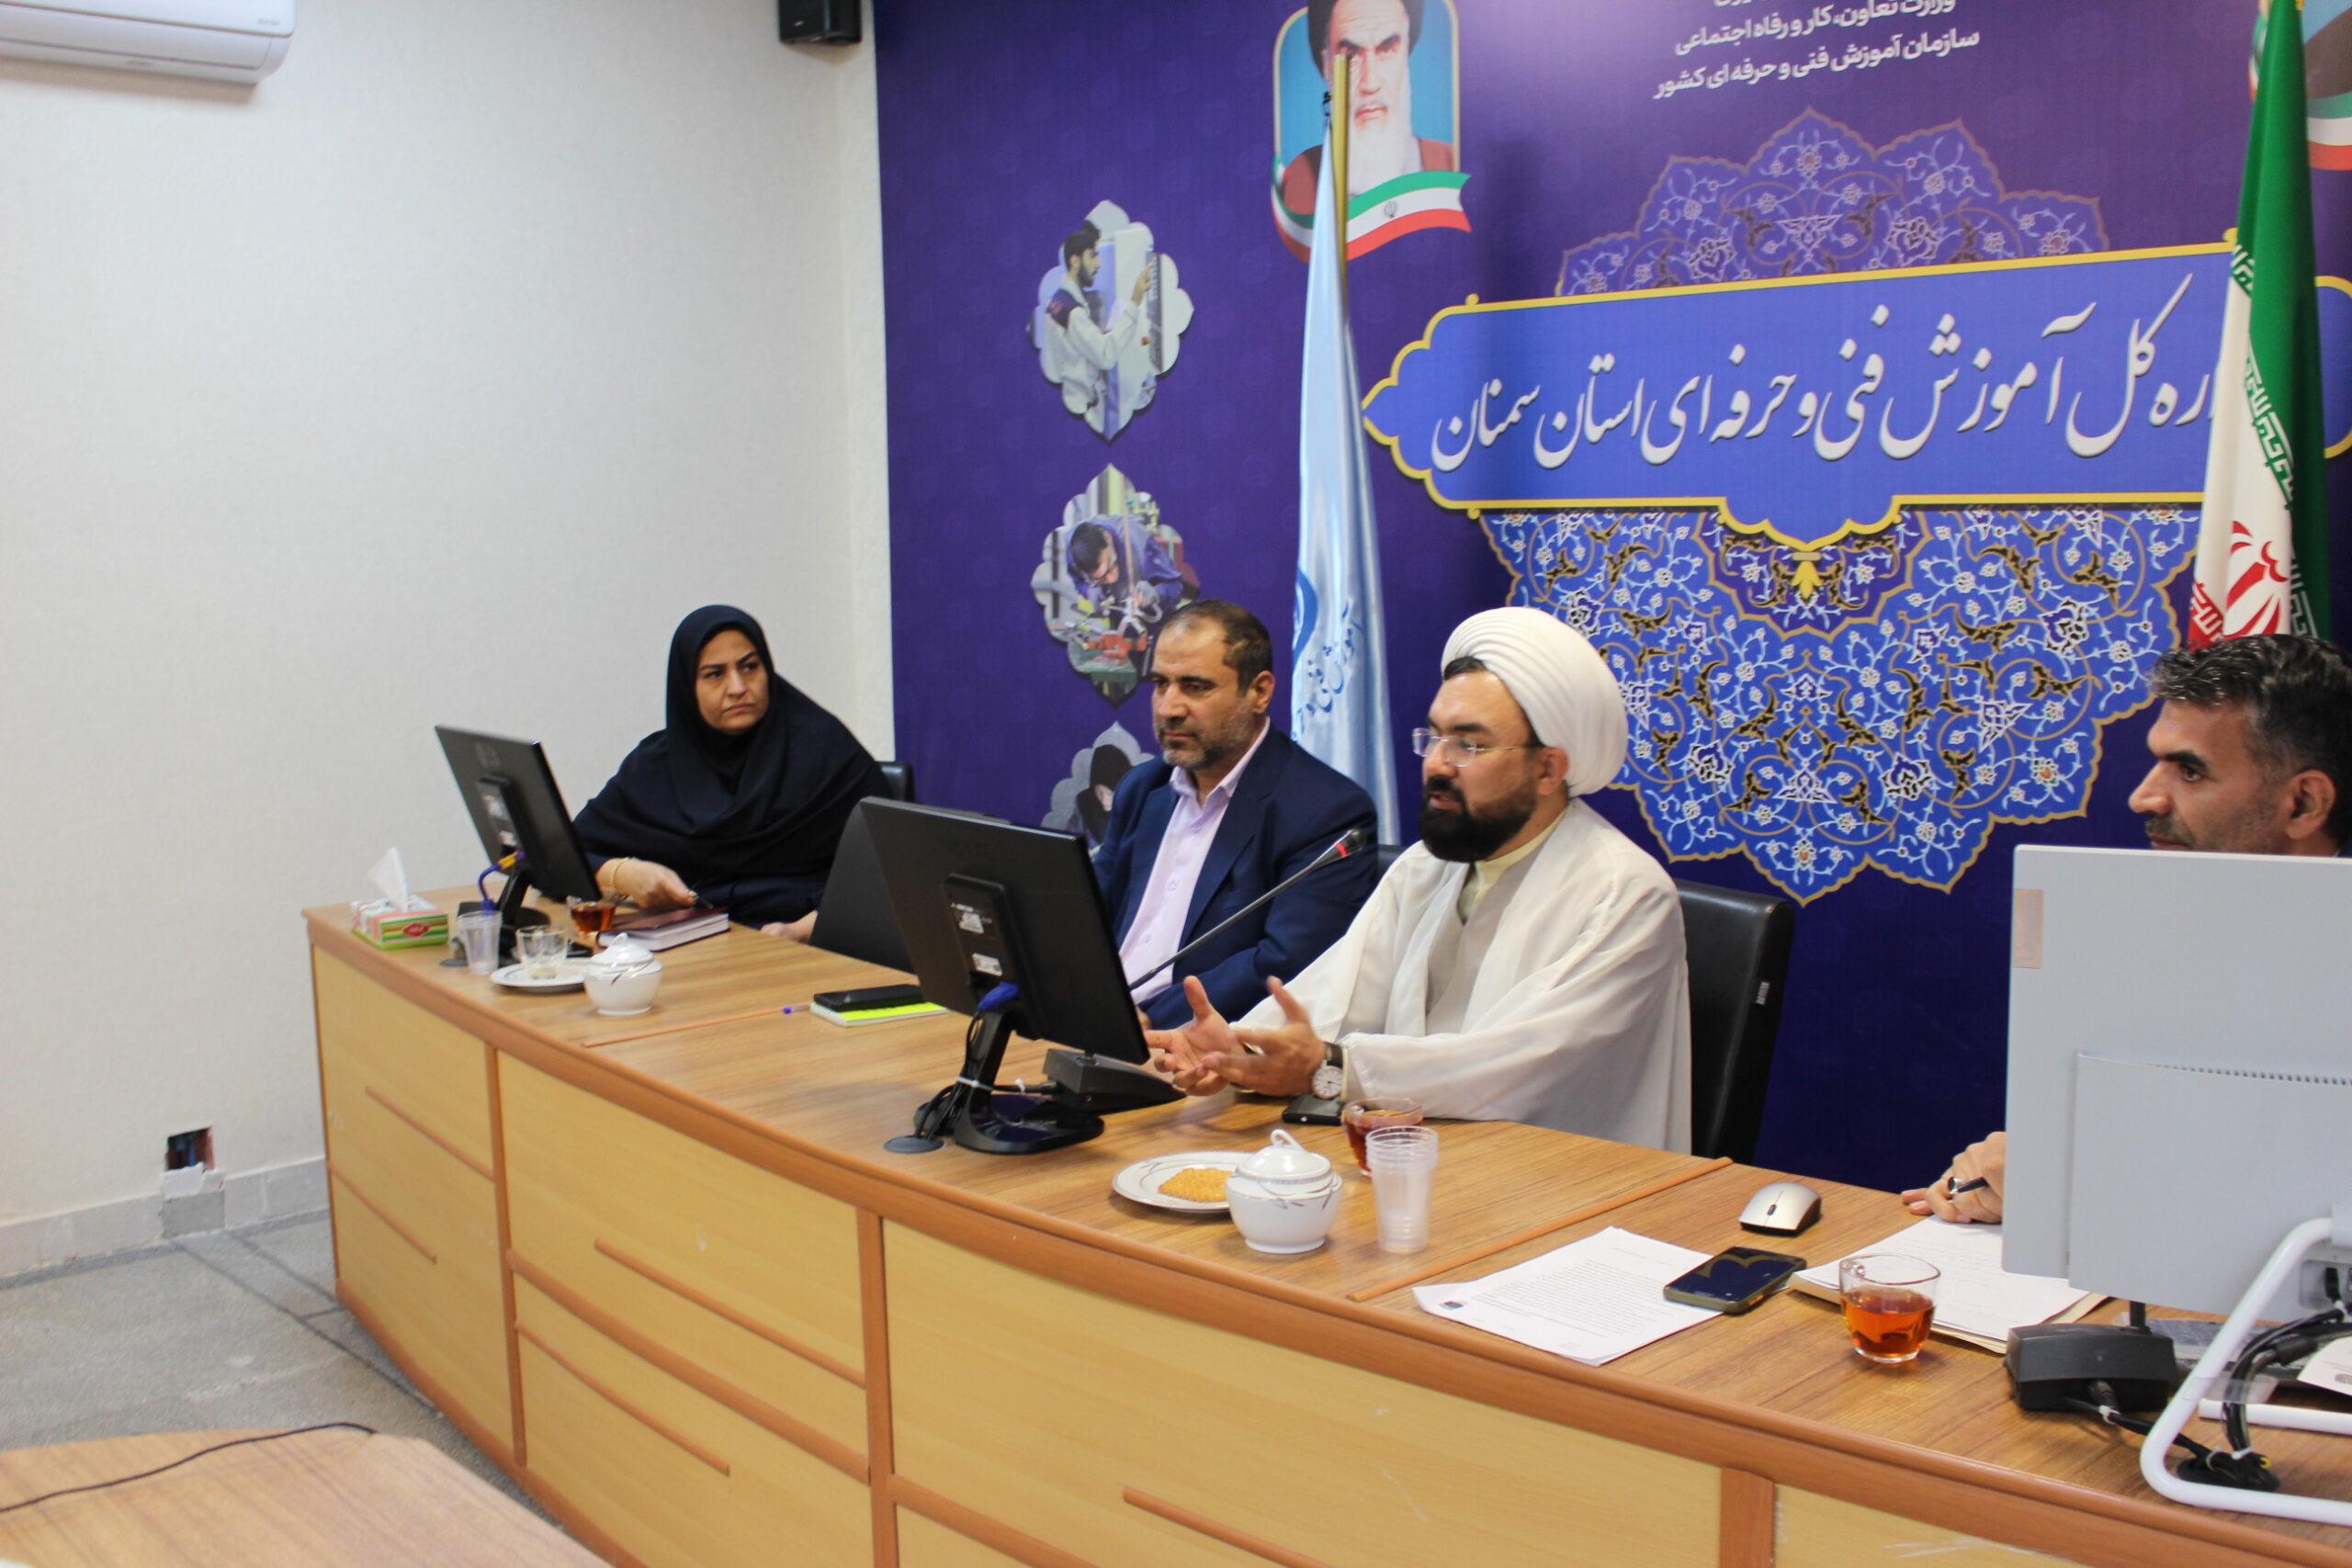 جلسه شورای اقامه نماز اداره کل آموزش فنی و حرفه ای استان برگزار شد.